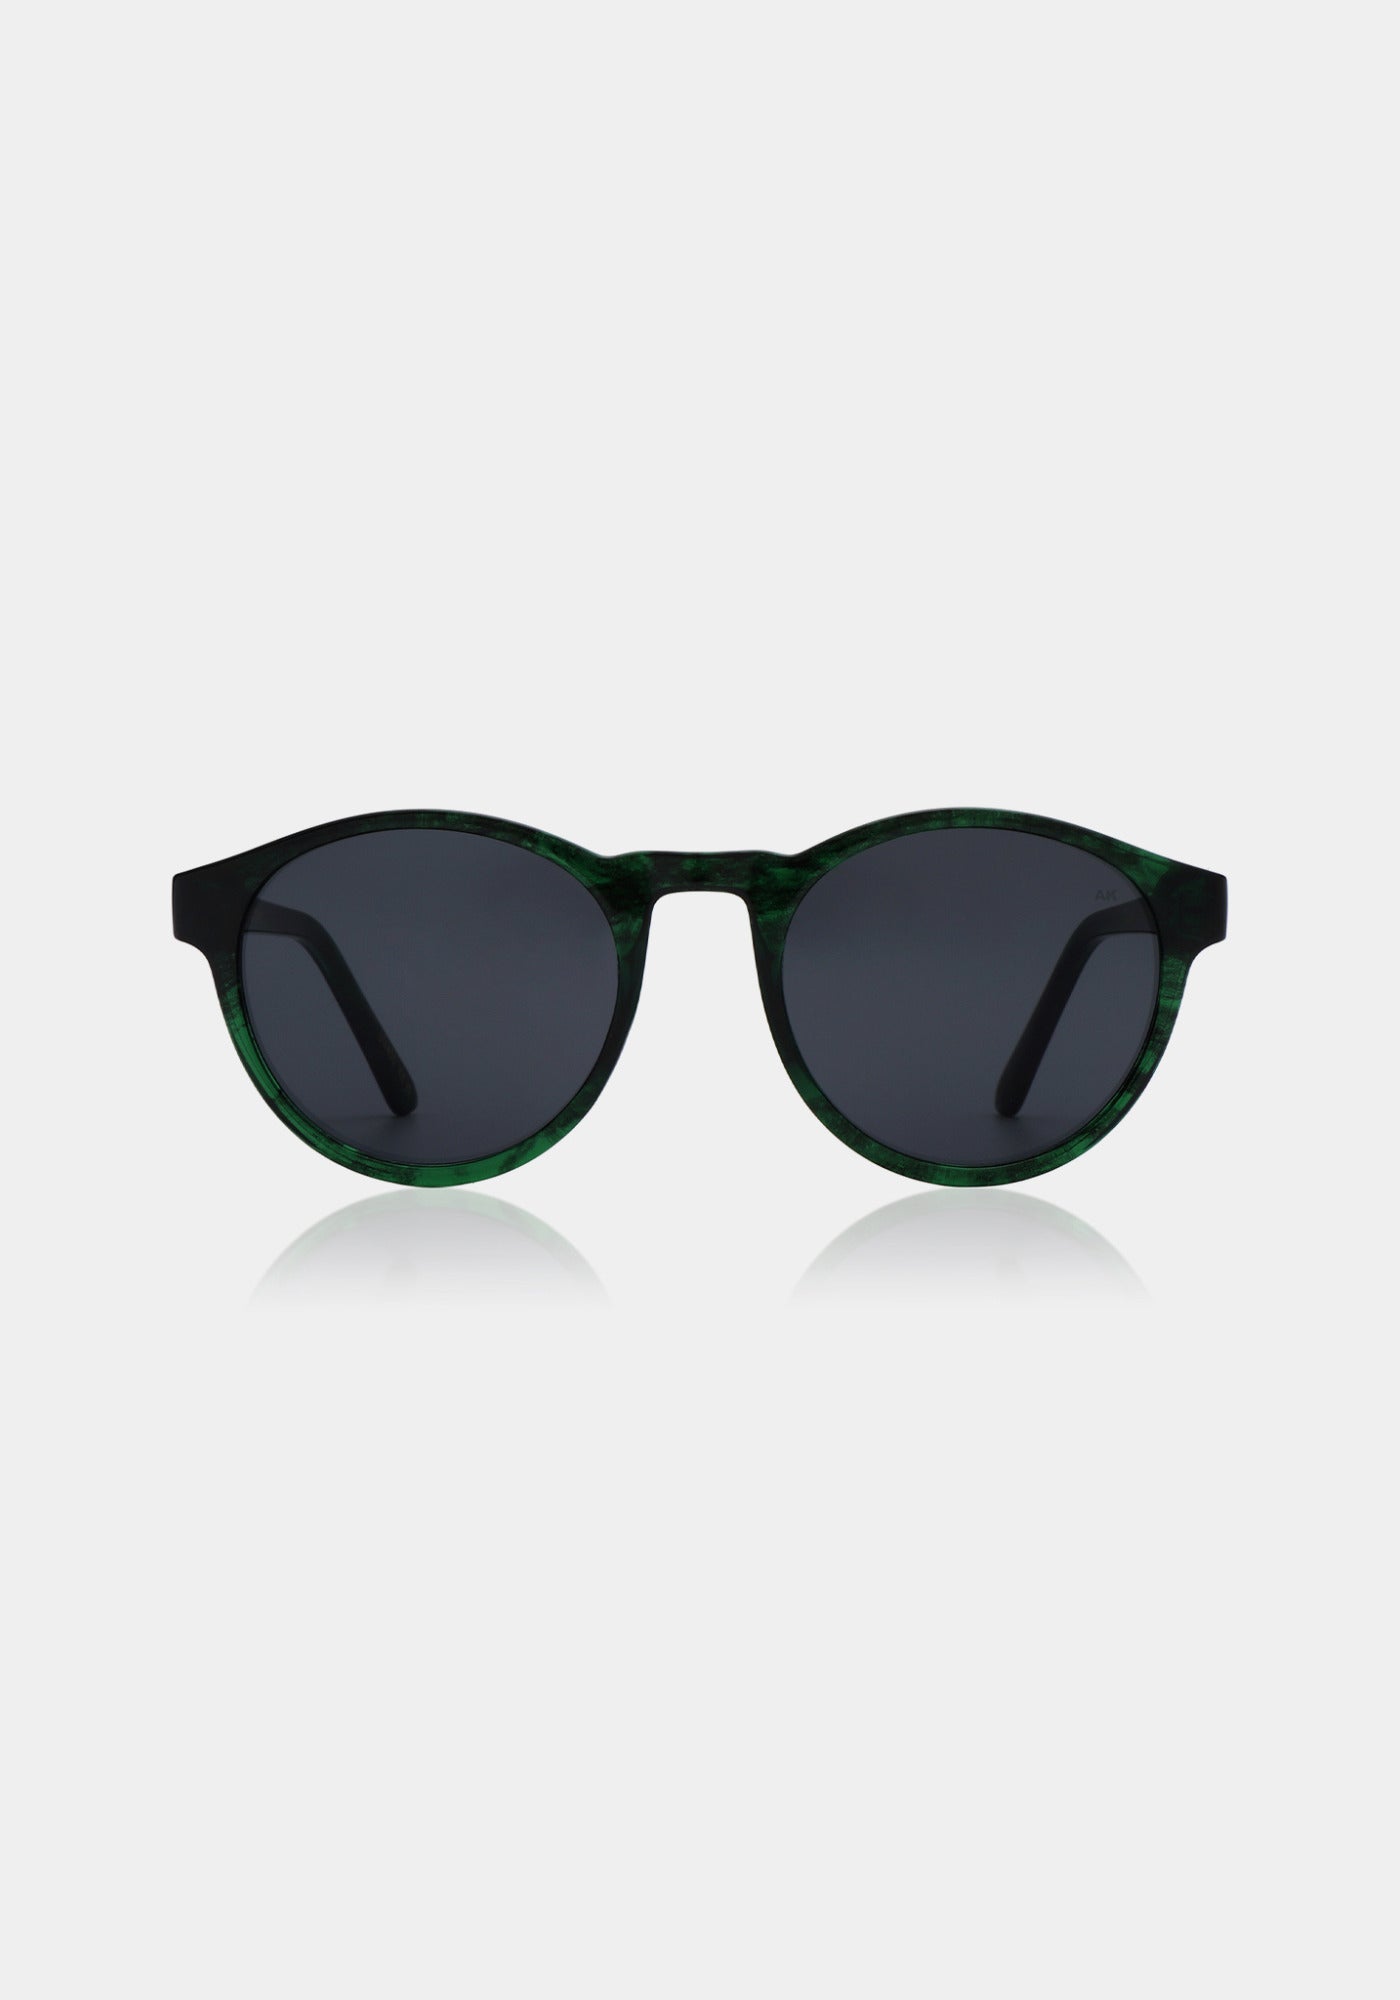 Les lunettes de soleil Marvin green marbre transparent de chez A.Kjaerbede